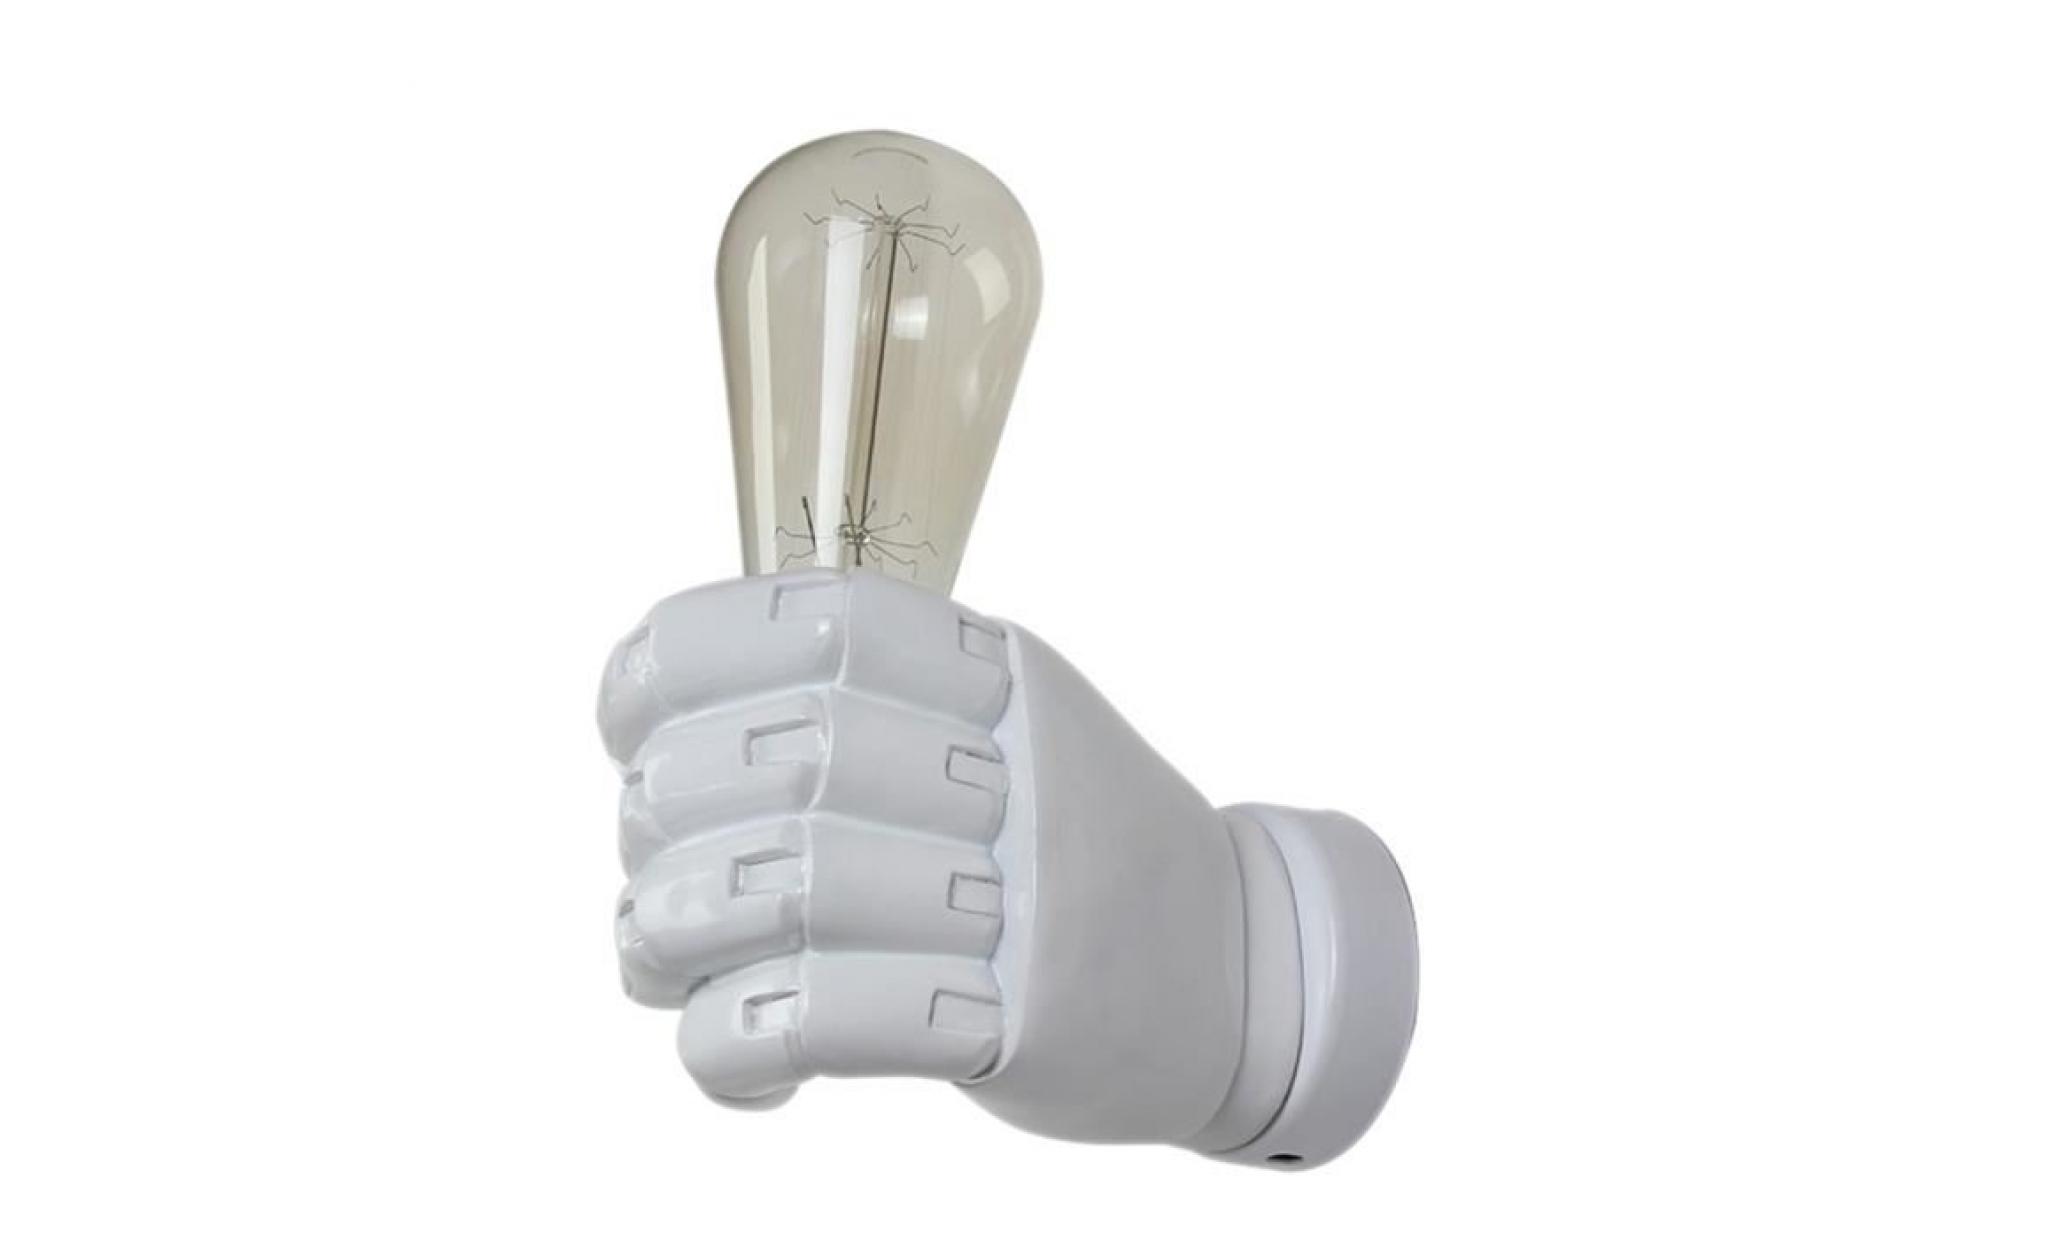 blanche applique retro de main gauche creative en resine lumiere industrielle loft lampe a restaurant de sushi restaurant bar cafe